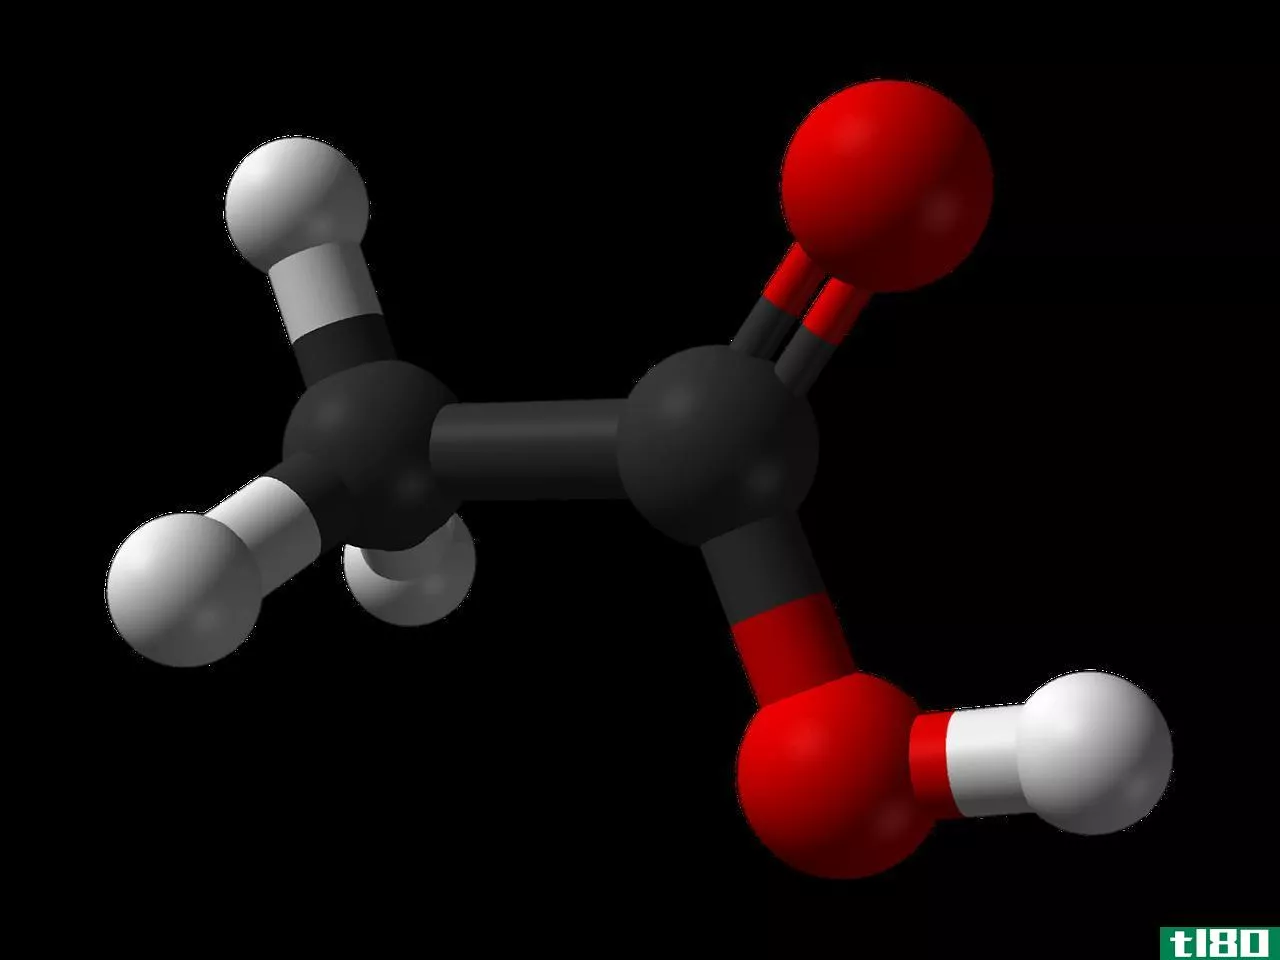 丙酮(acetone)和醋酸(acetic acid)的区别